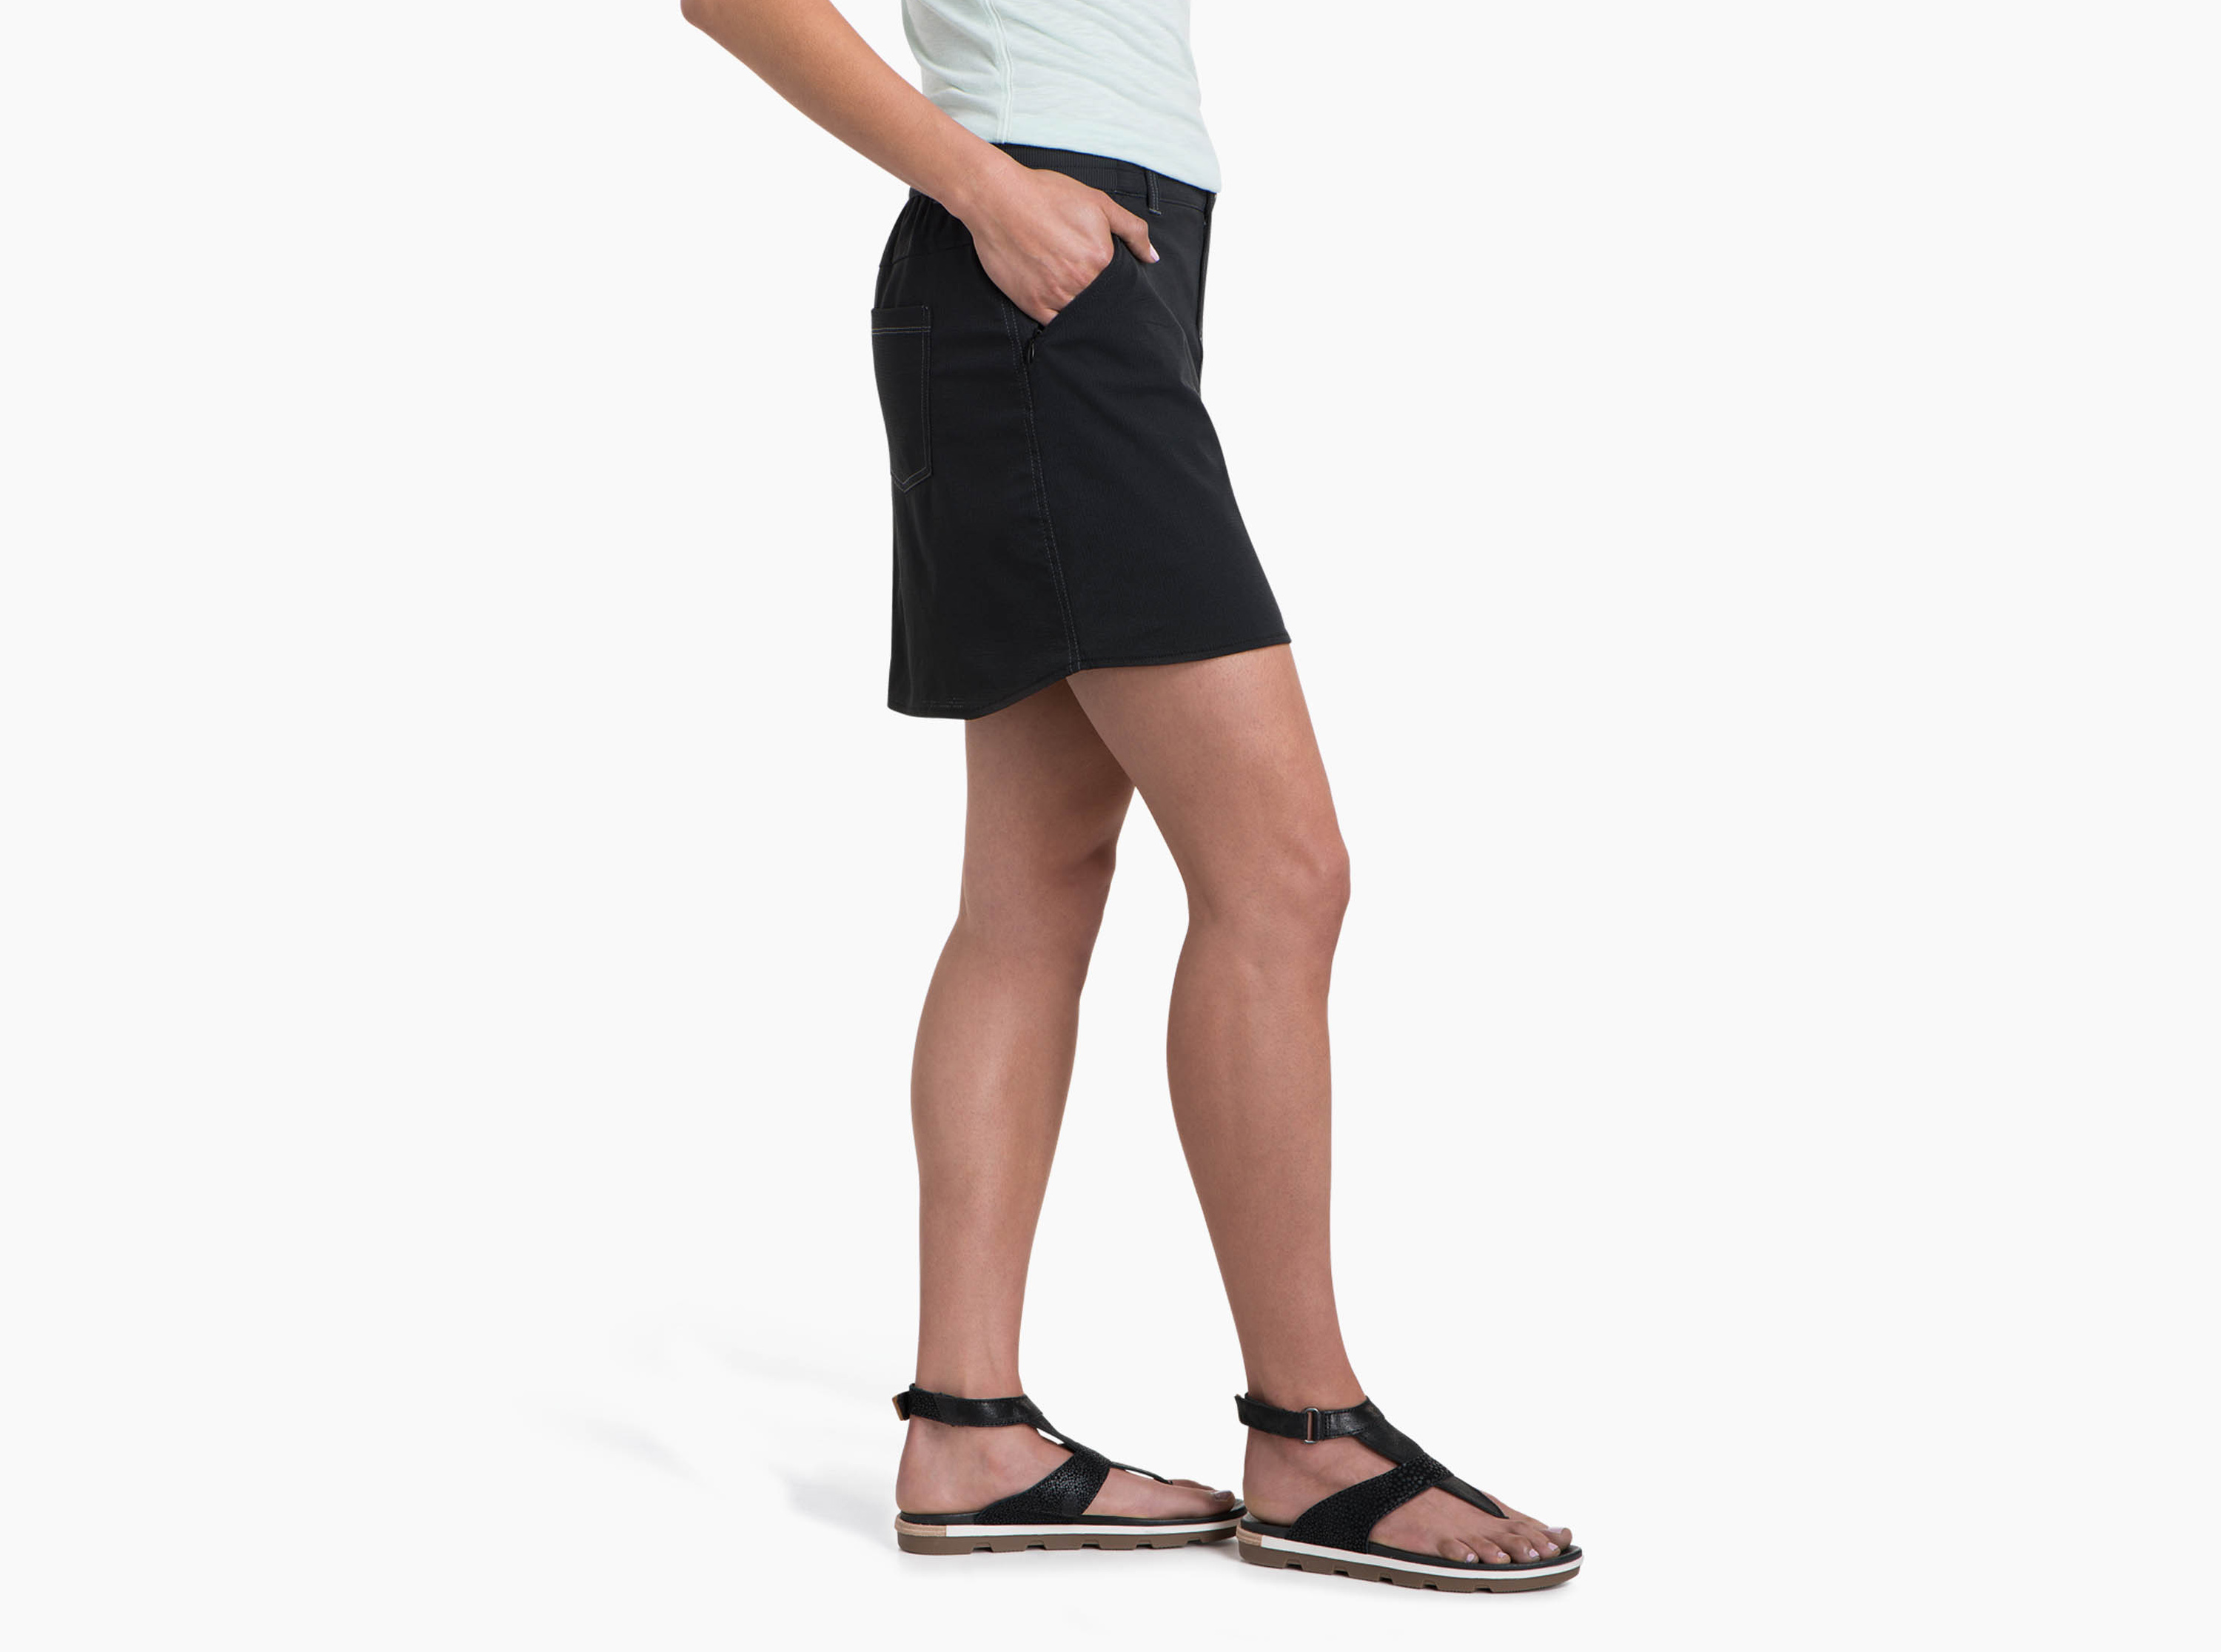 Strattus™ Skort in Women's Skirts Skorts